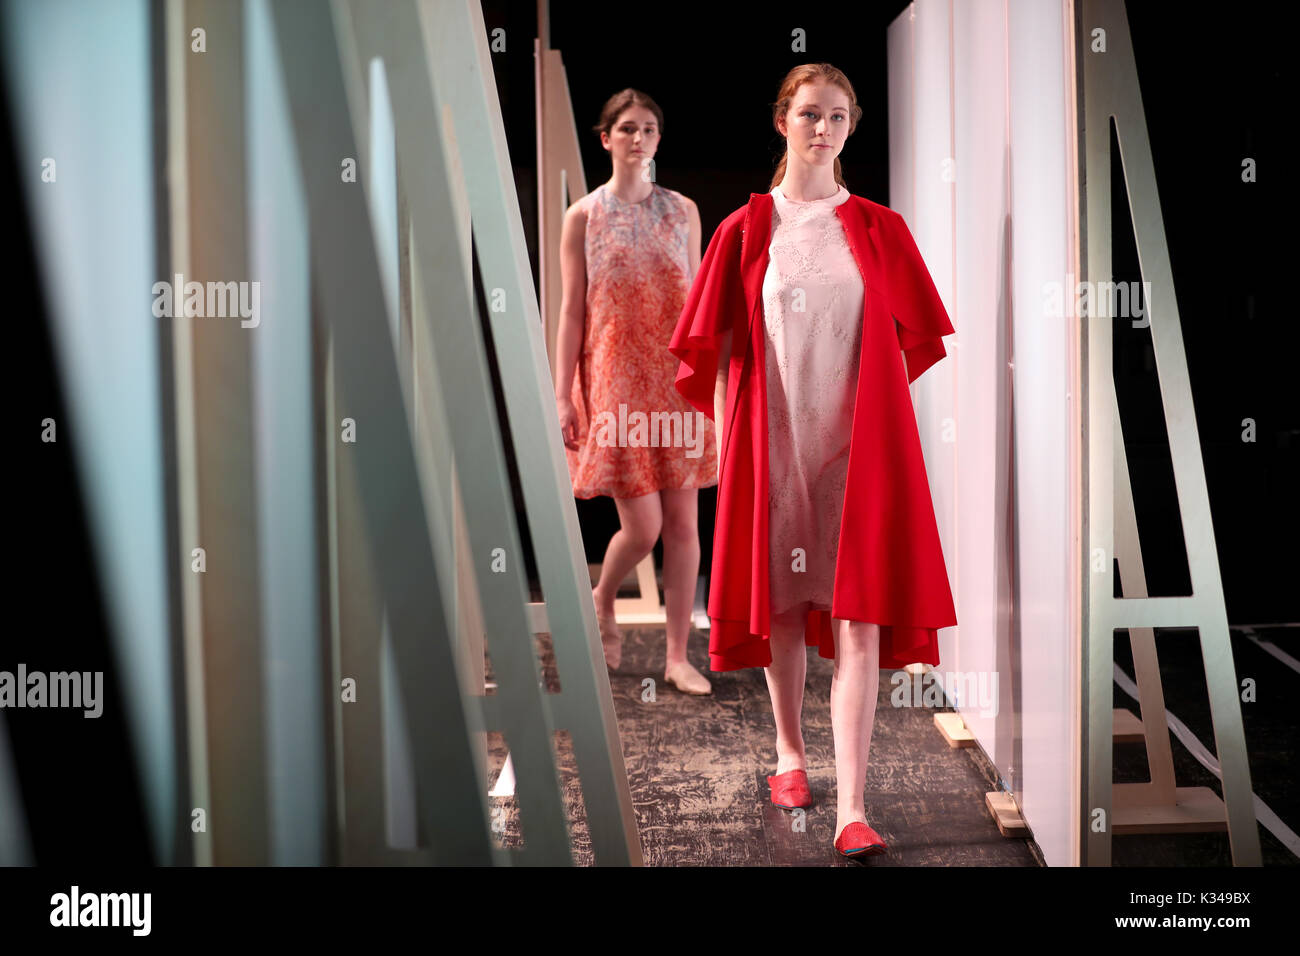 Dessins et modèles industriels par Paula Helmstedt de mérite, au cours des 21 Maîtres de Fashion Design show à Glasgow School of Art. Banque D'Images